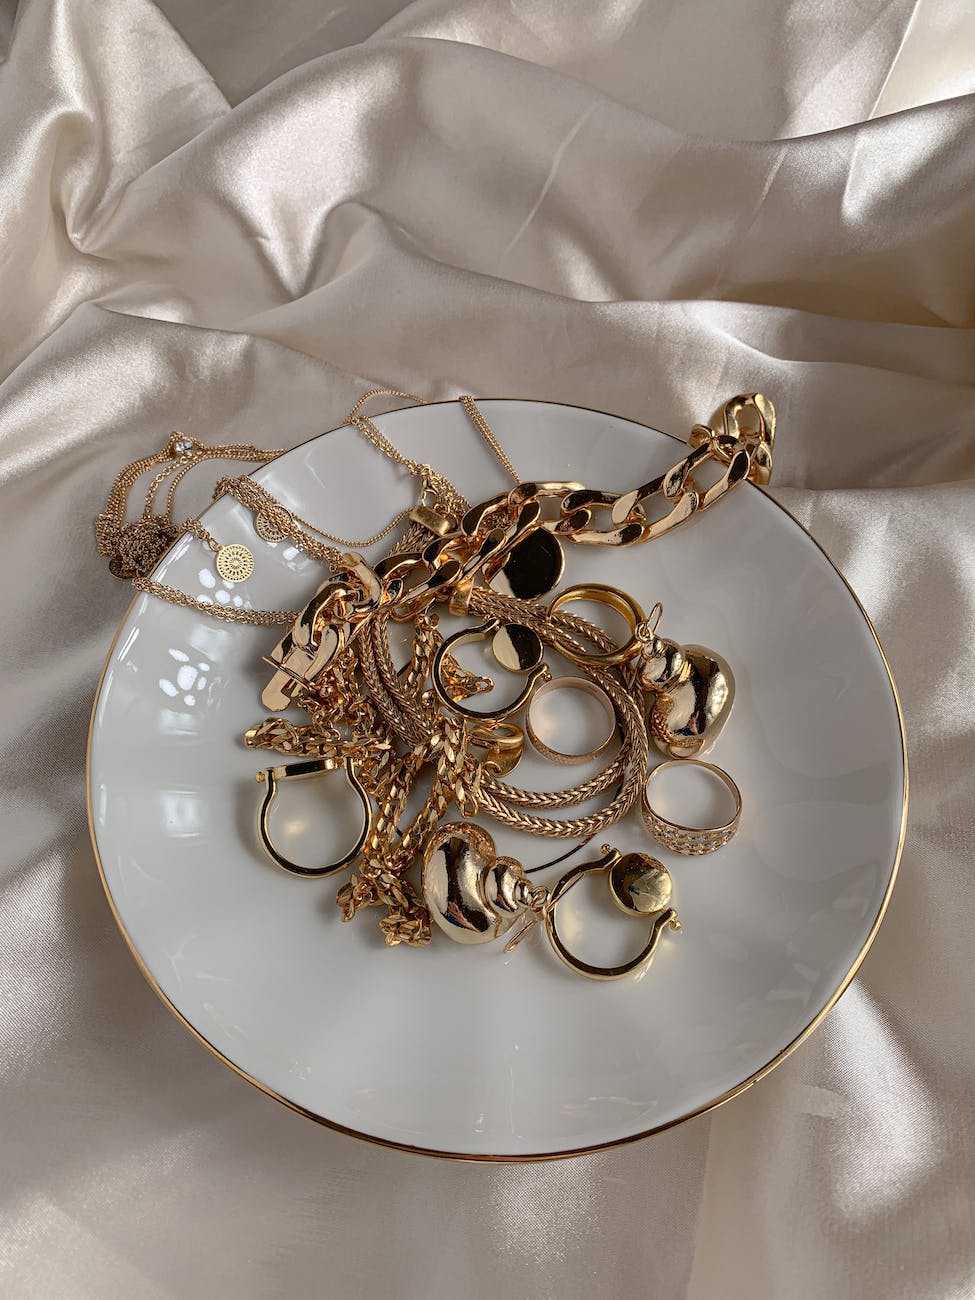 oude spullen met veel waarde golden accessories on white saucer